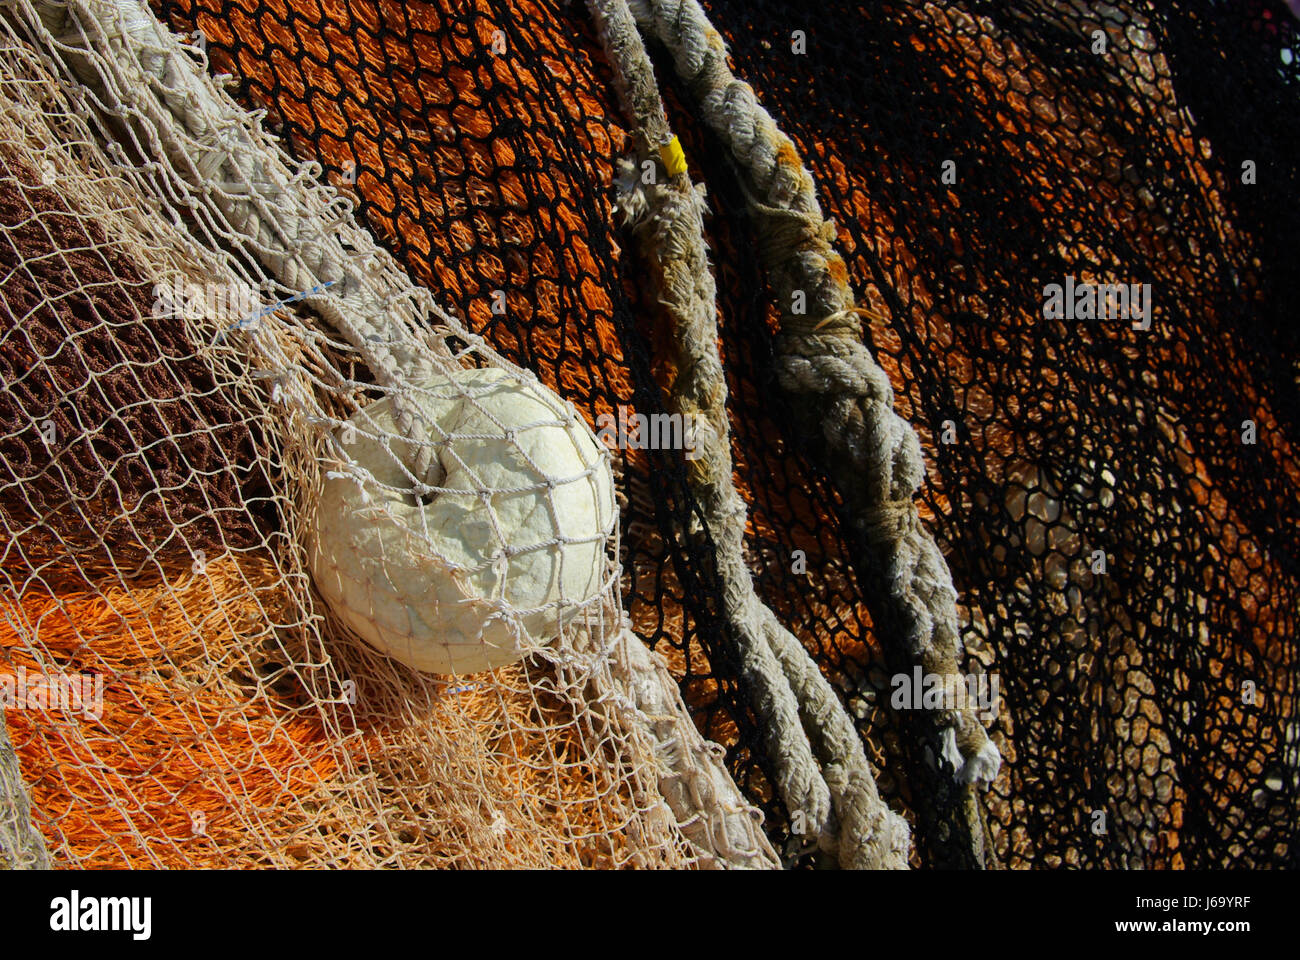 Winkel Fische net Fischen Fischer Netz Netzstrümpfe Garn Angeln net farbig Stockfoto